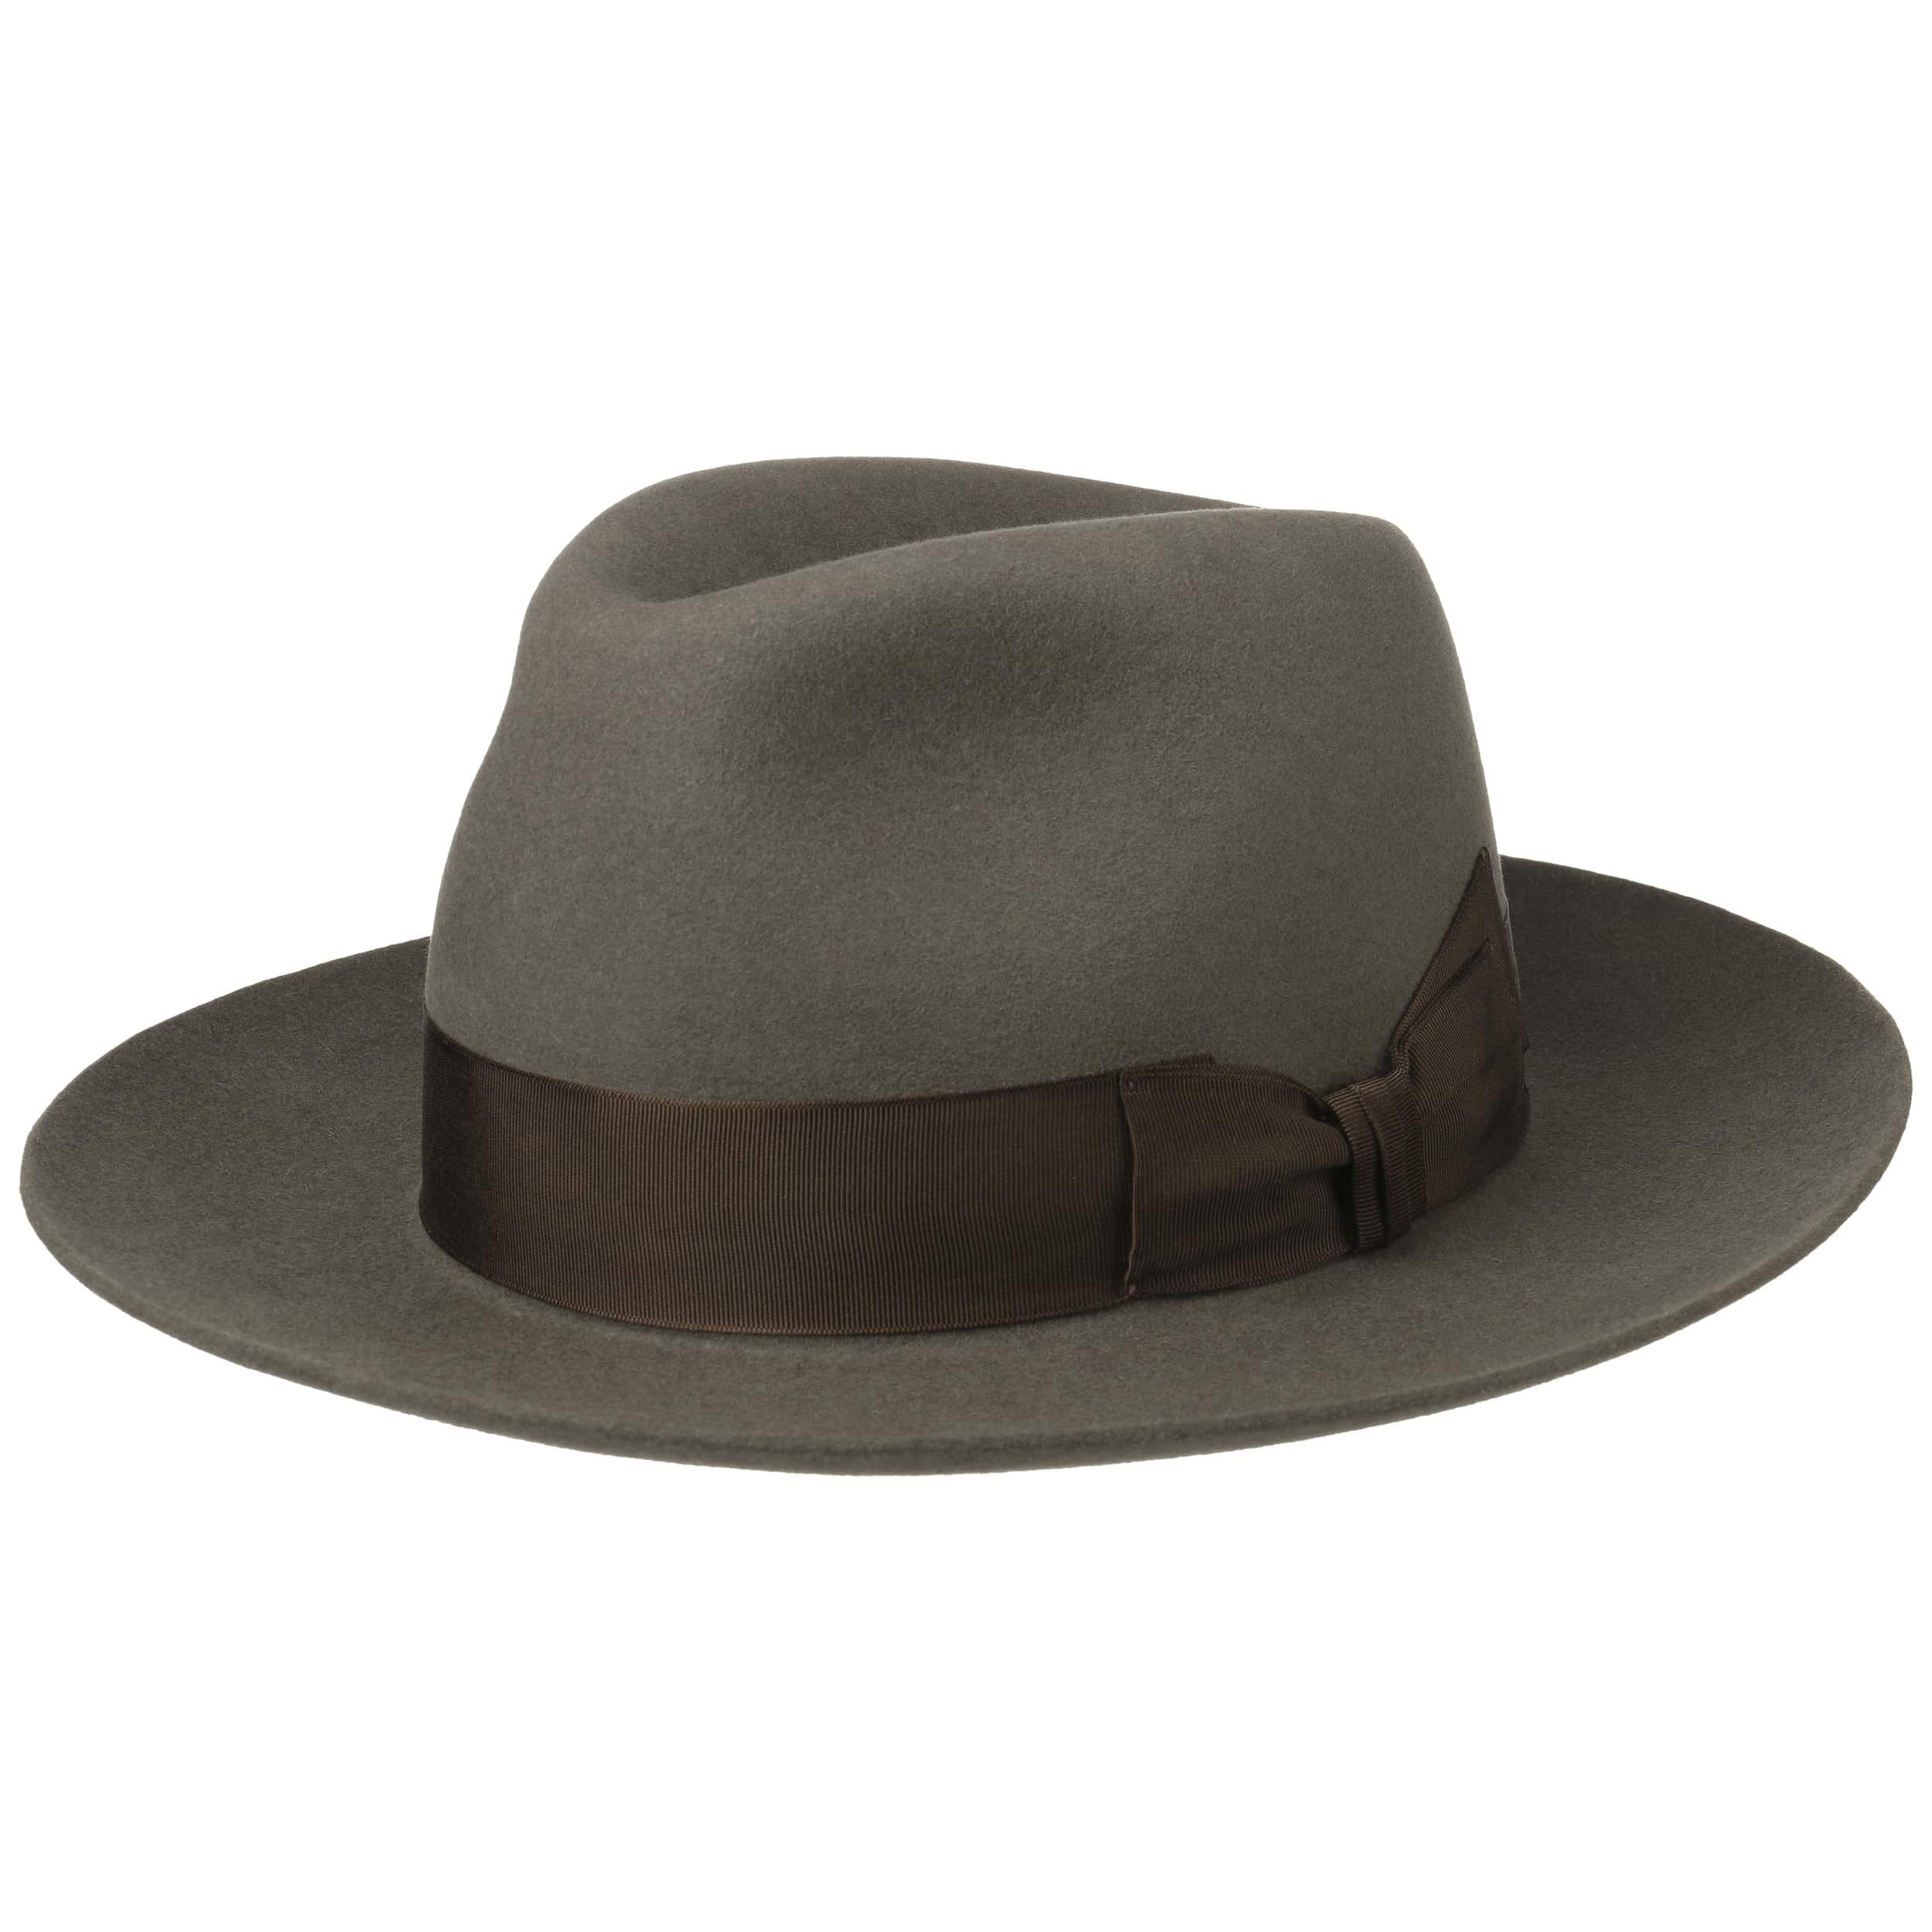 flat top wide brim round wool felt fedora hat